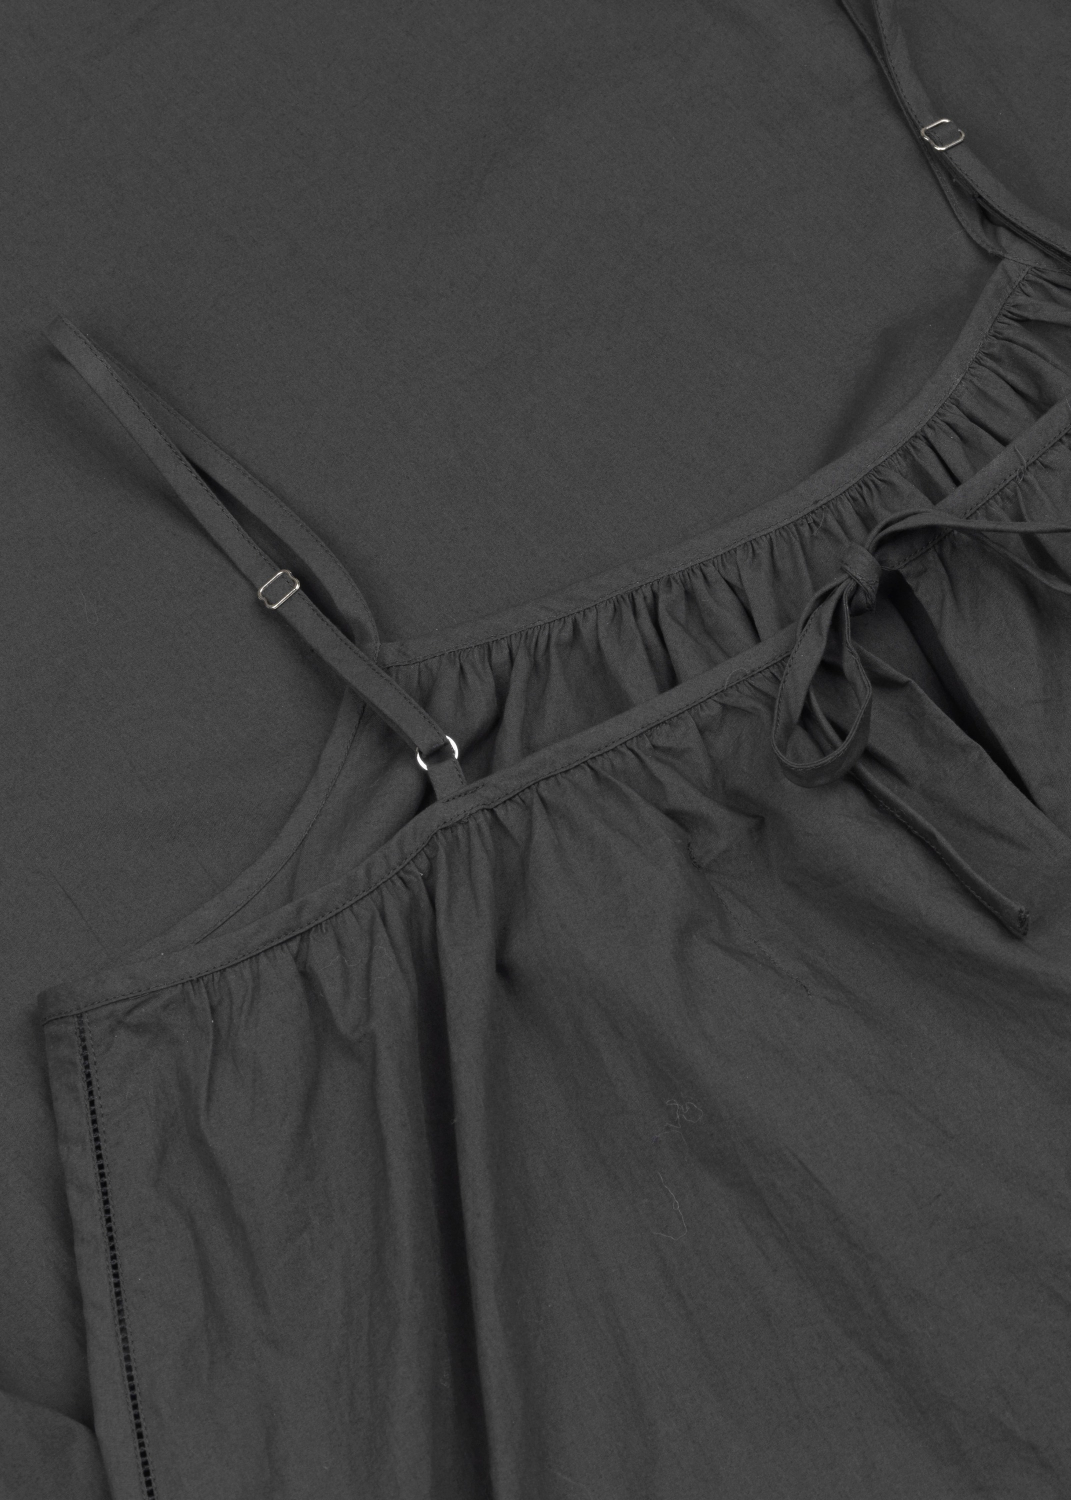 Kjoler & nederdele - Strap Dress Thumbnail